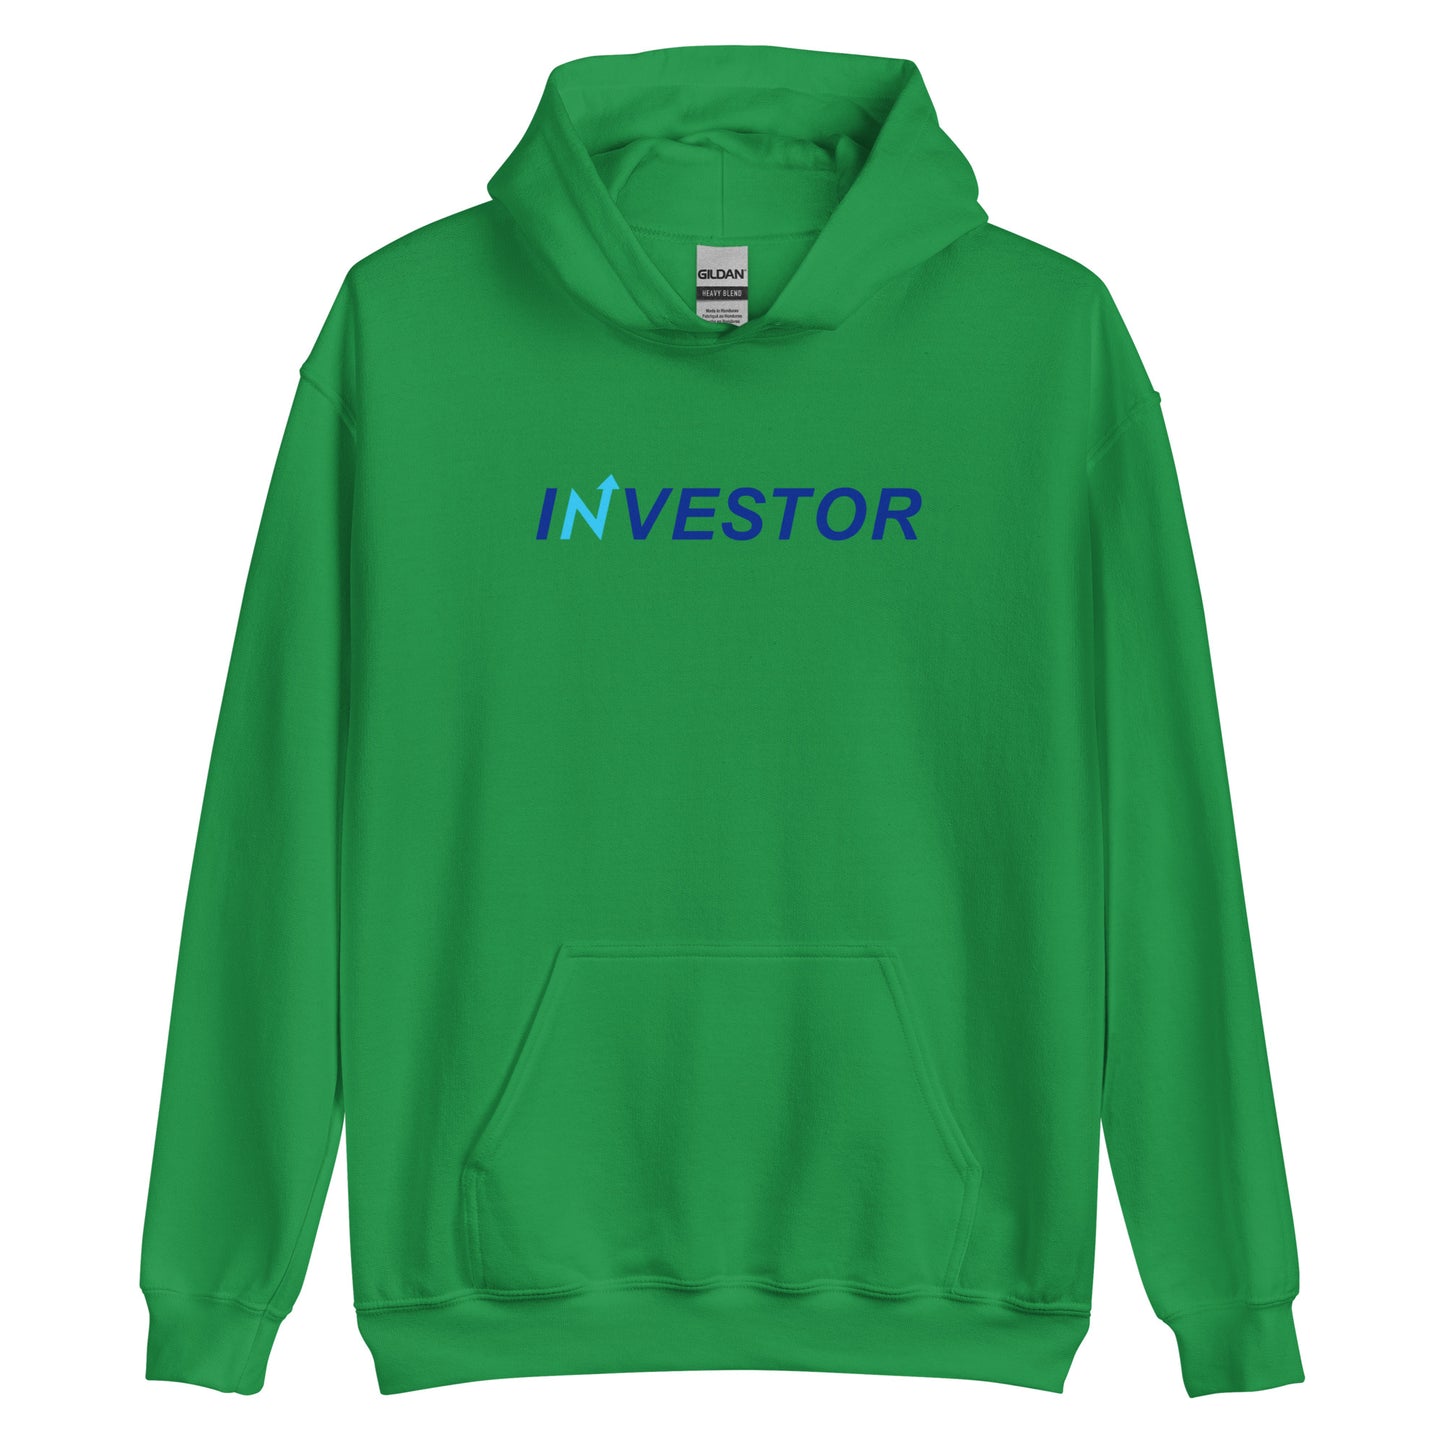 iNvestor Unisex Hoodie